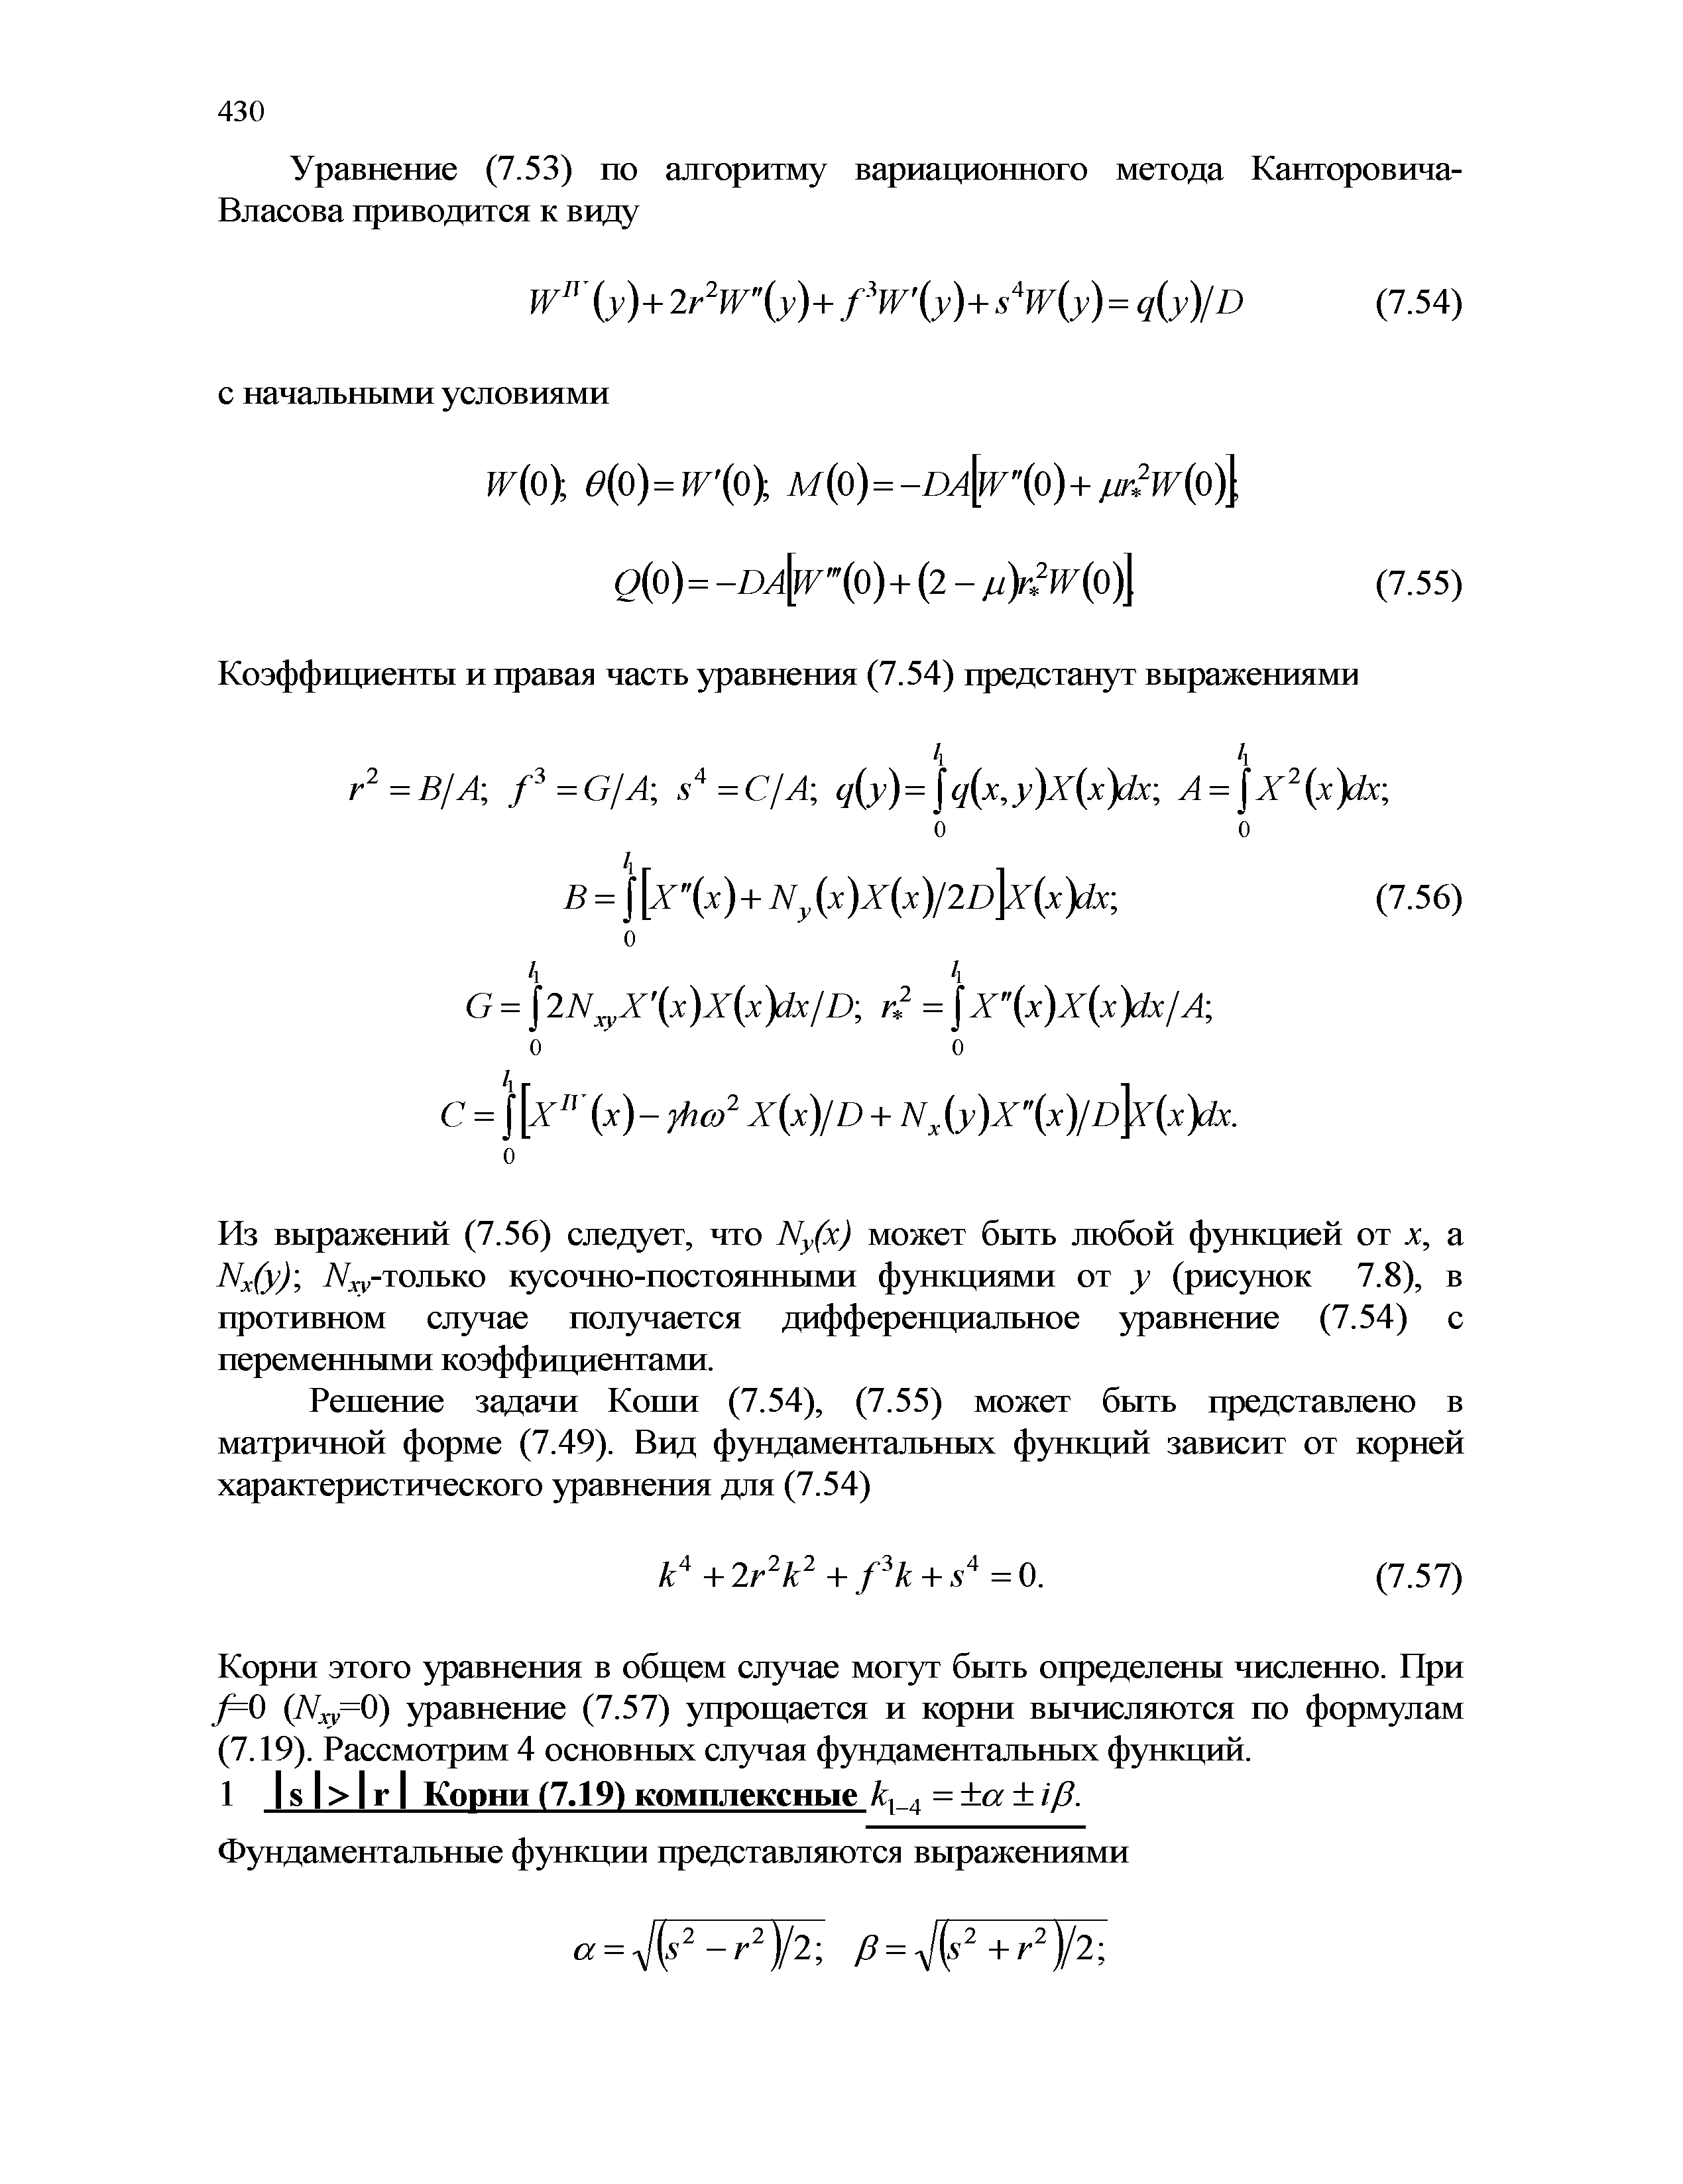 Из выражений (7.56) следует, что Ny(x) может быть любой функцией от х, а Nx(y) -только кусочно-постоянными функциями от у (рисунок 7.8), в противном случае получается дифференциальное уравнение (7.54) с переменными коэффициентами.
